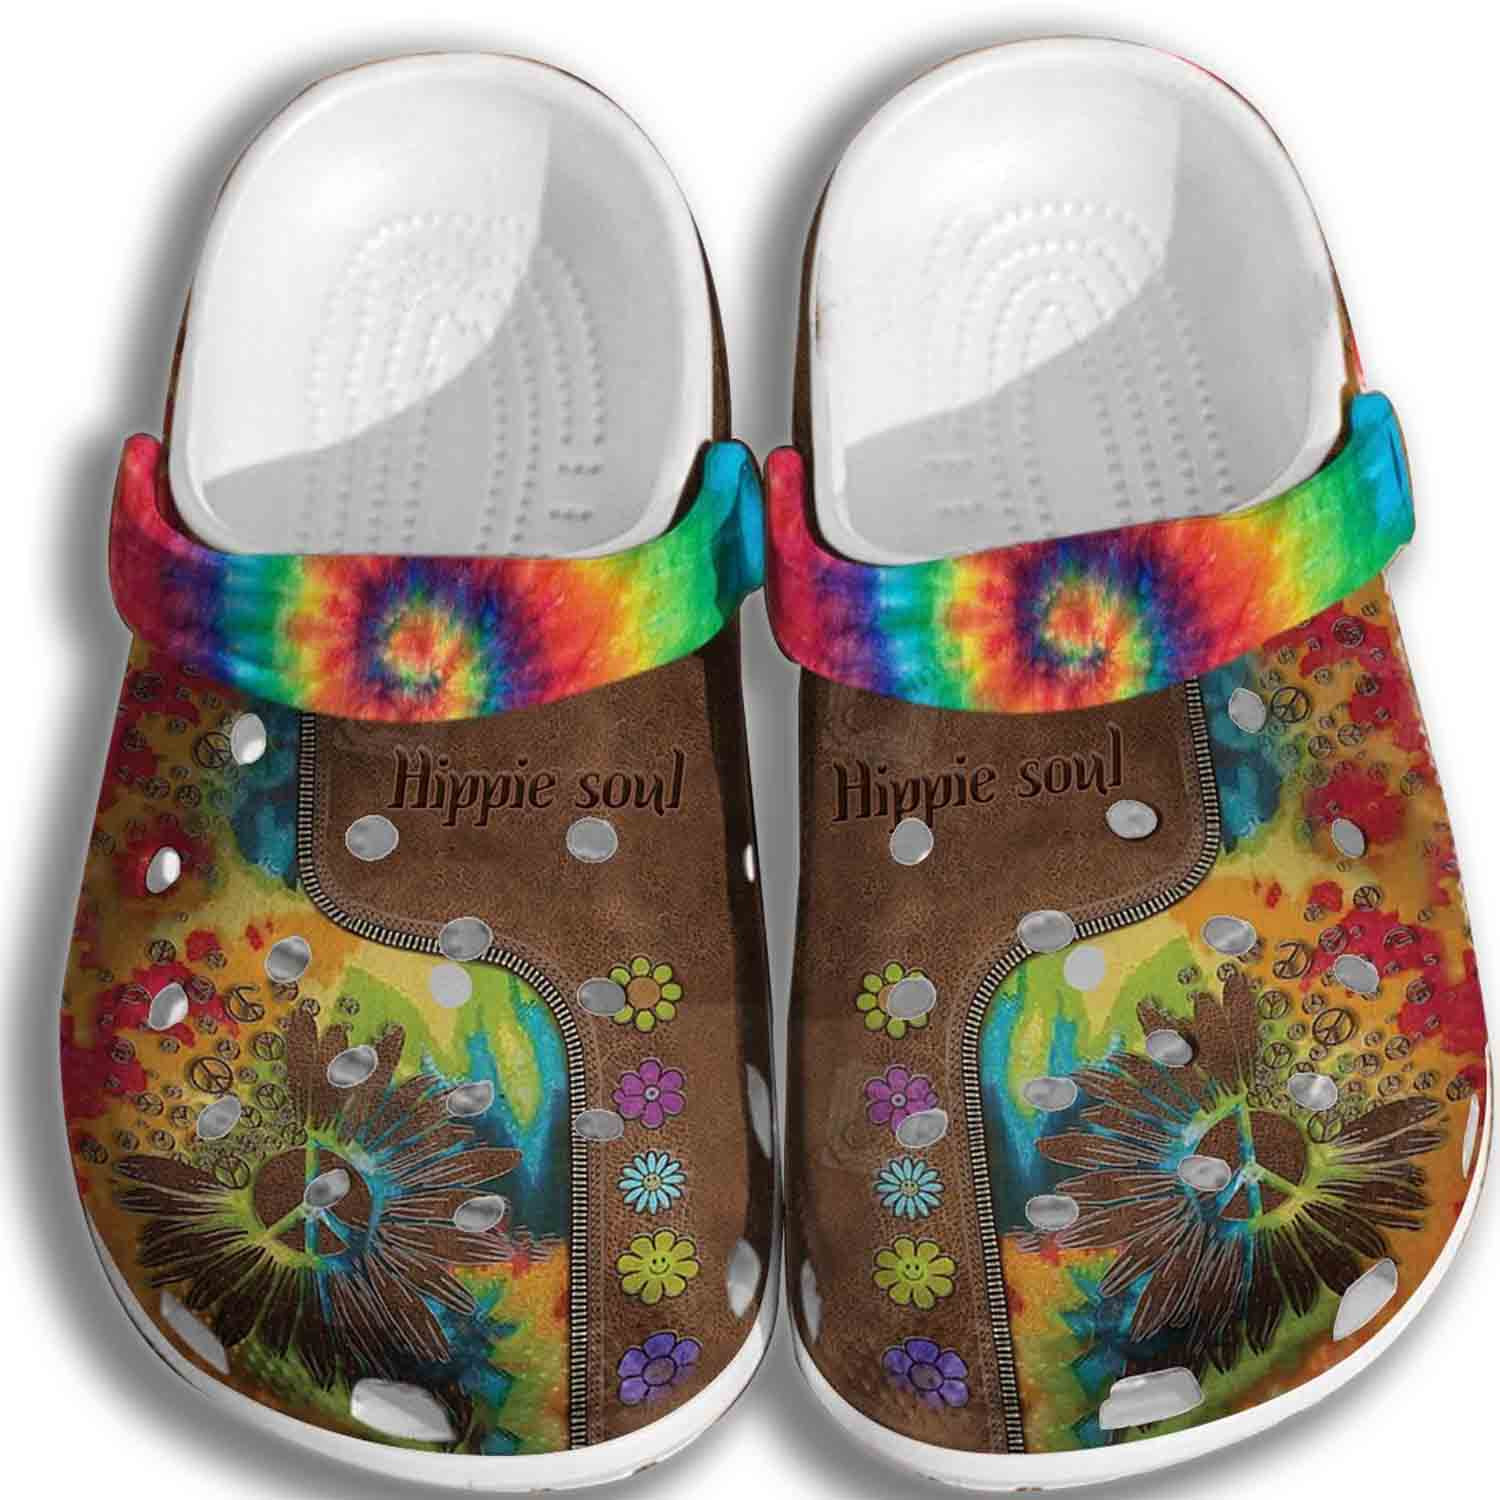 Hippie Soul Crocs Clog Shoes Men Women - Colorful Crocs Clog Shoes Gifts For Son Daughter